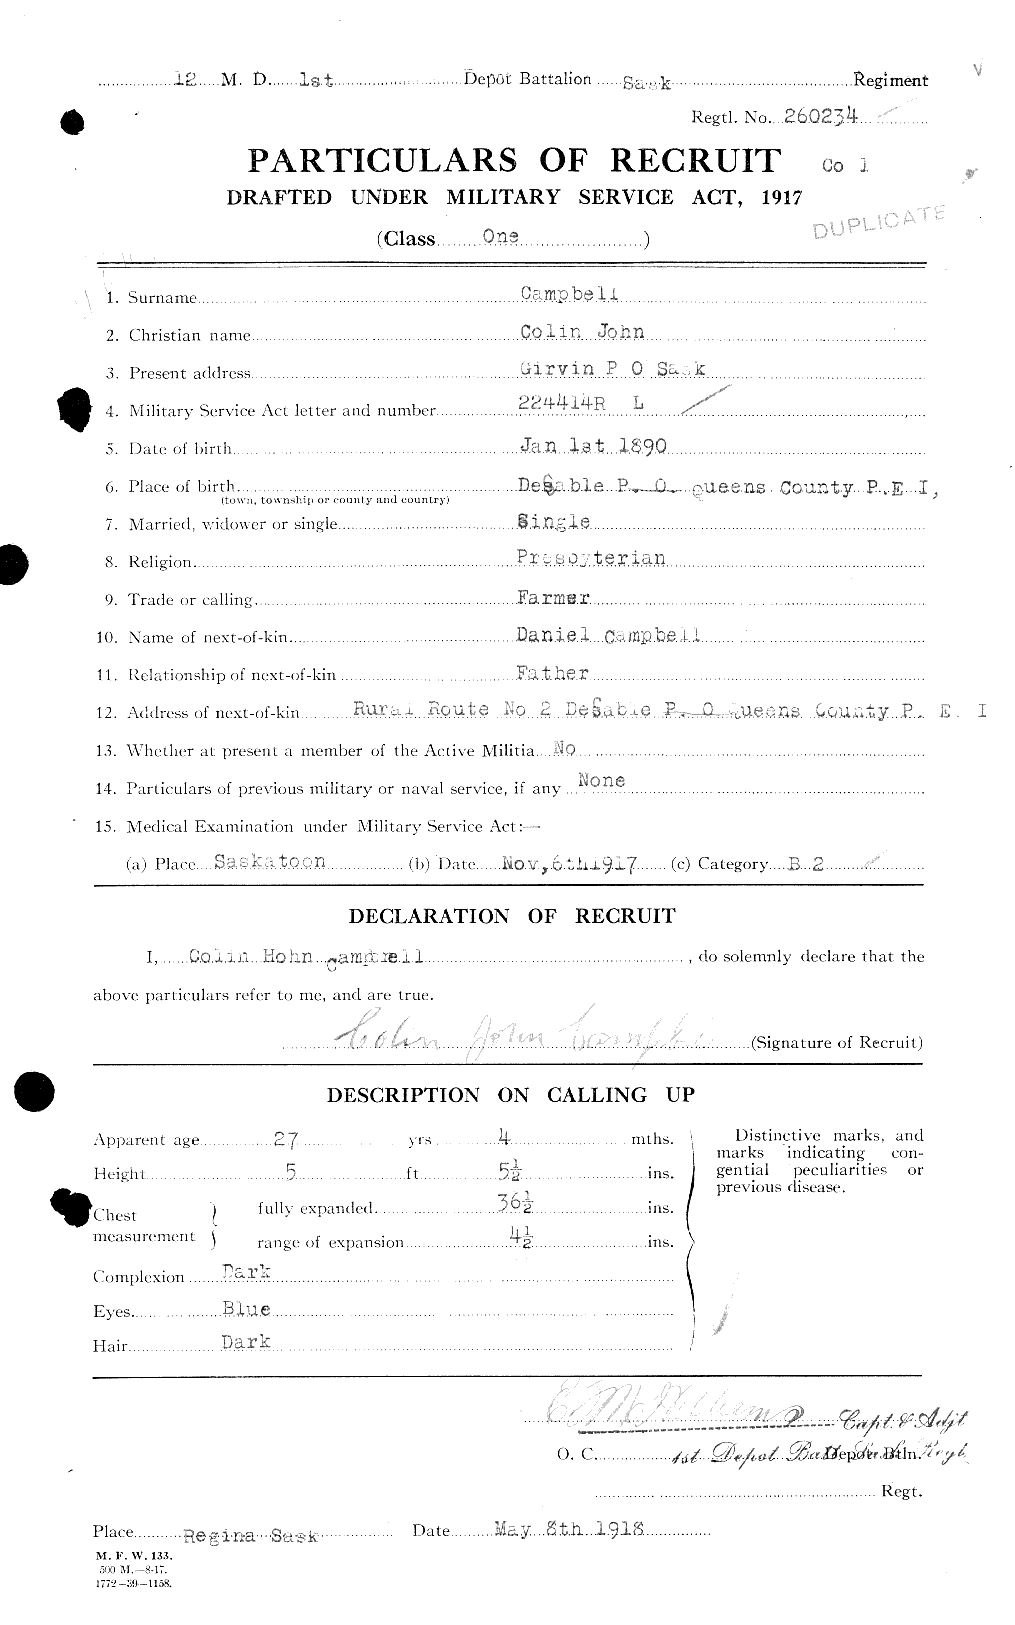 Dossiers du Personnel de la Première Guerre mondiale - CEC 008127a